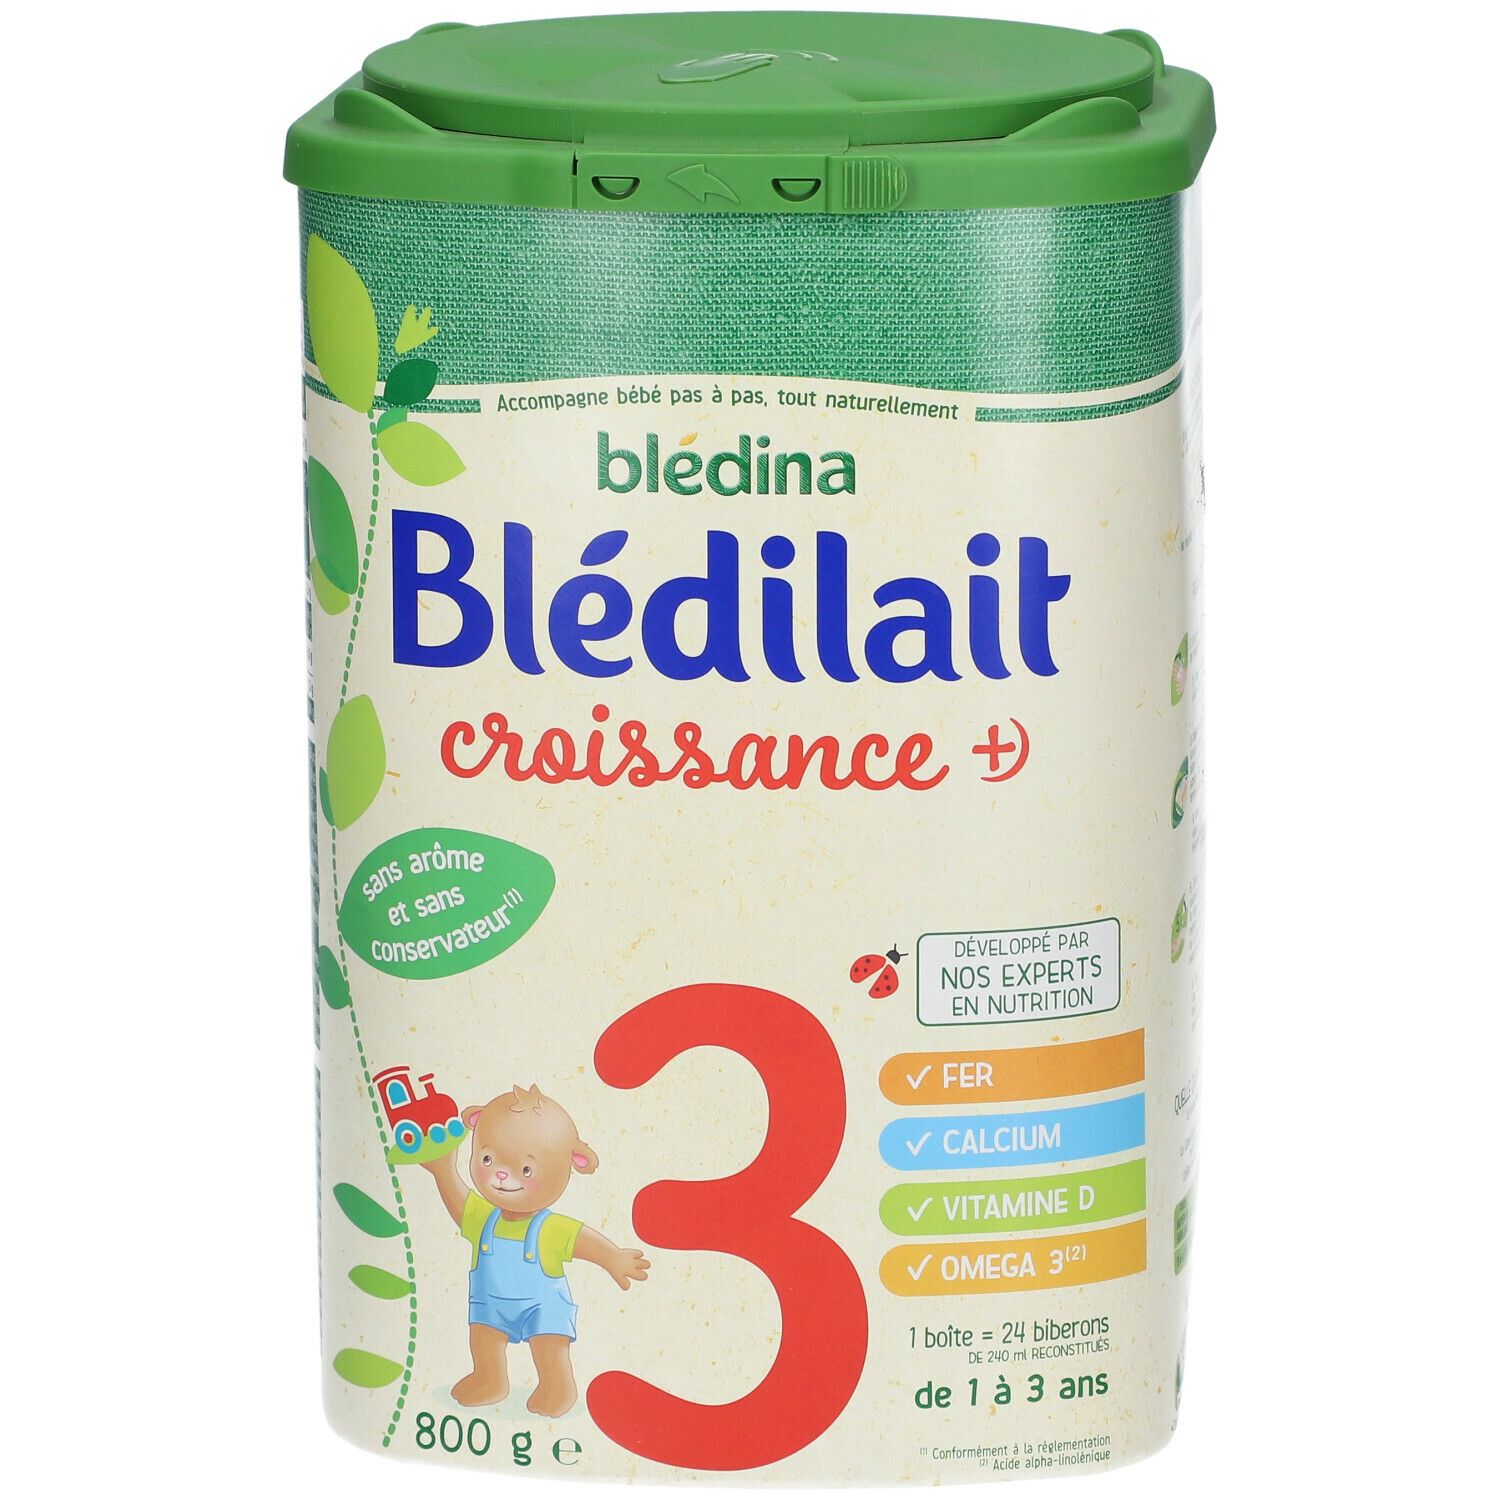 Blédilait Bledilait Croissance + de 12 mois à 3 ans